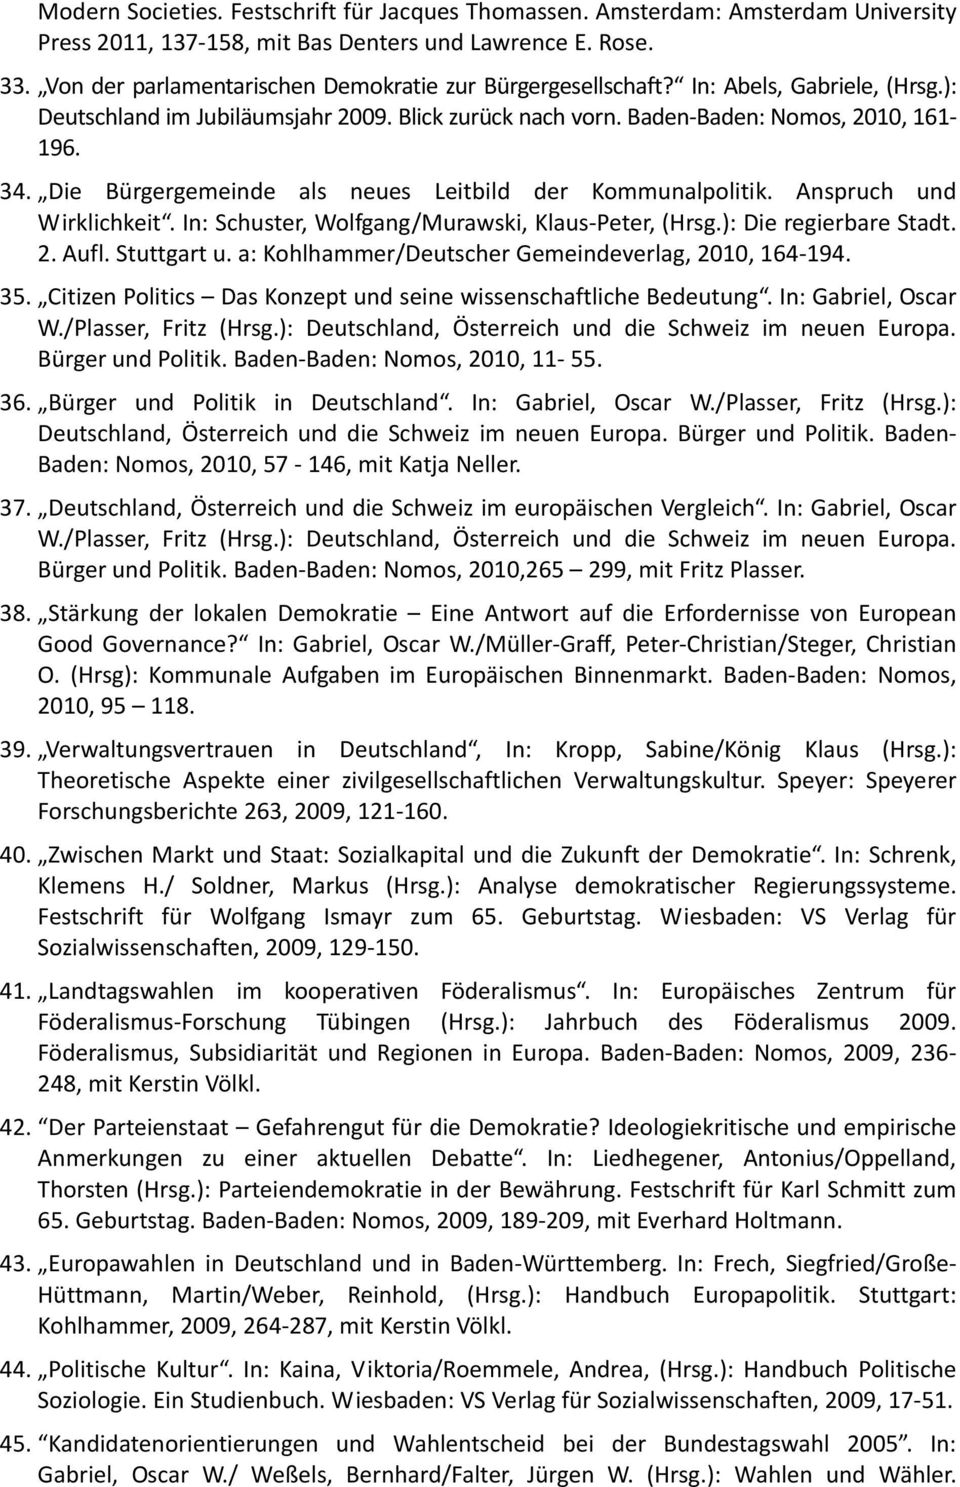 Die Bürgergemeinde als neues Leitbild der Kommunalpolitik. Anspruch und Wirklichkeit. In: Schuster, Wolfgang/Murawski, Klaus Peter, (Hrsg.): Die regierbare Stadt. 2. Aufl. Stuttgart u.